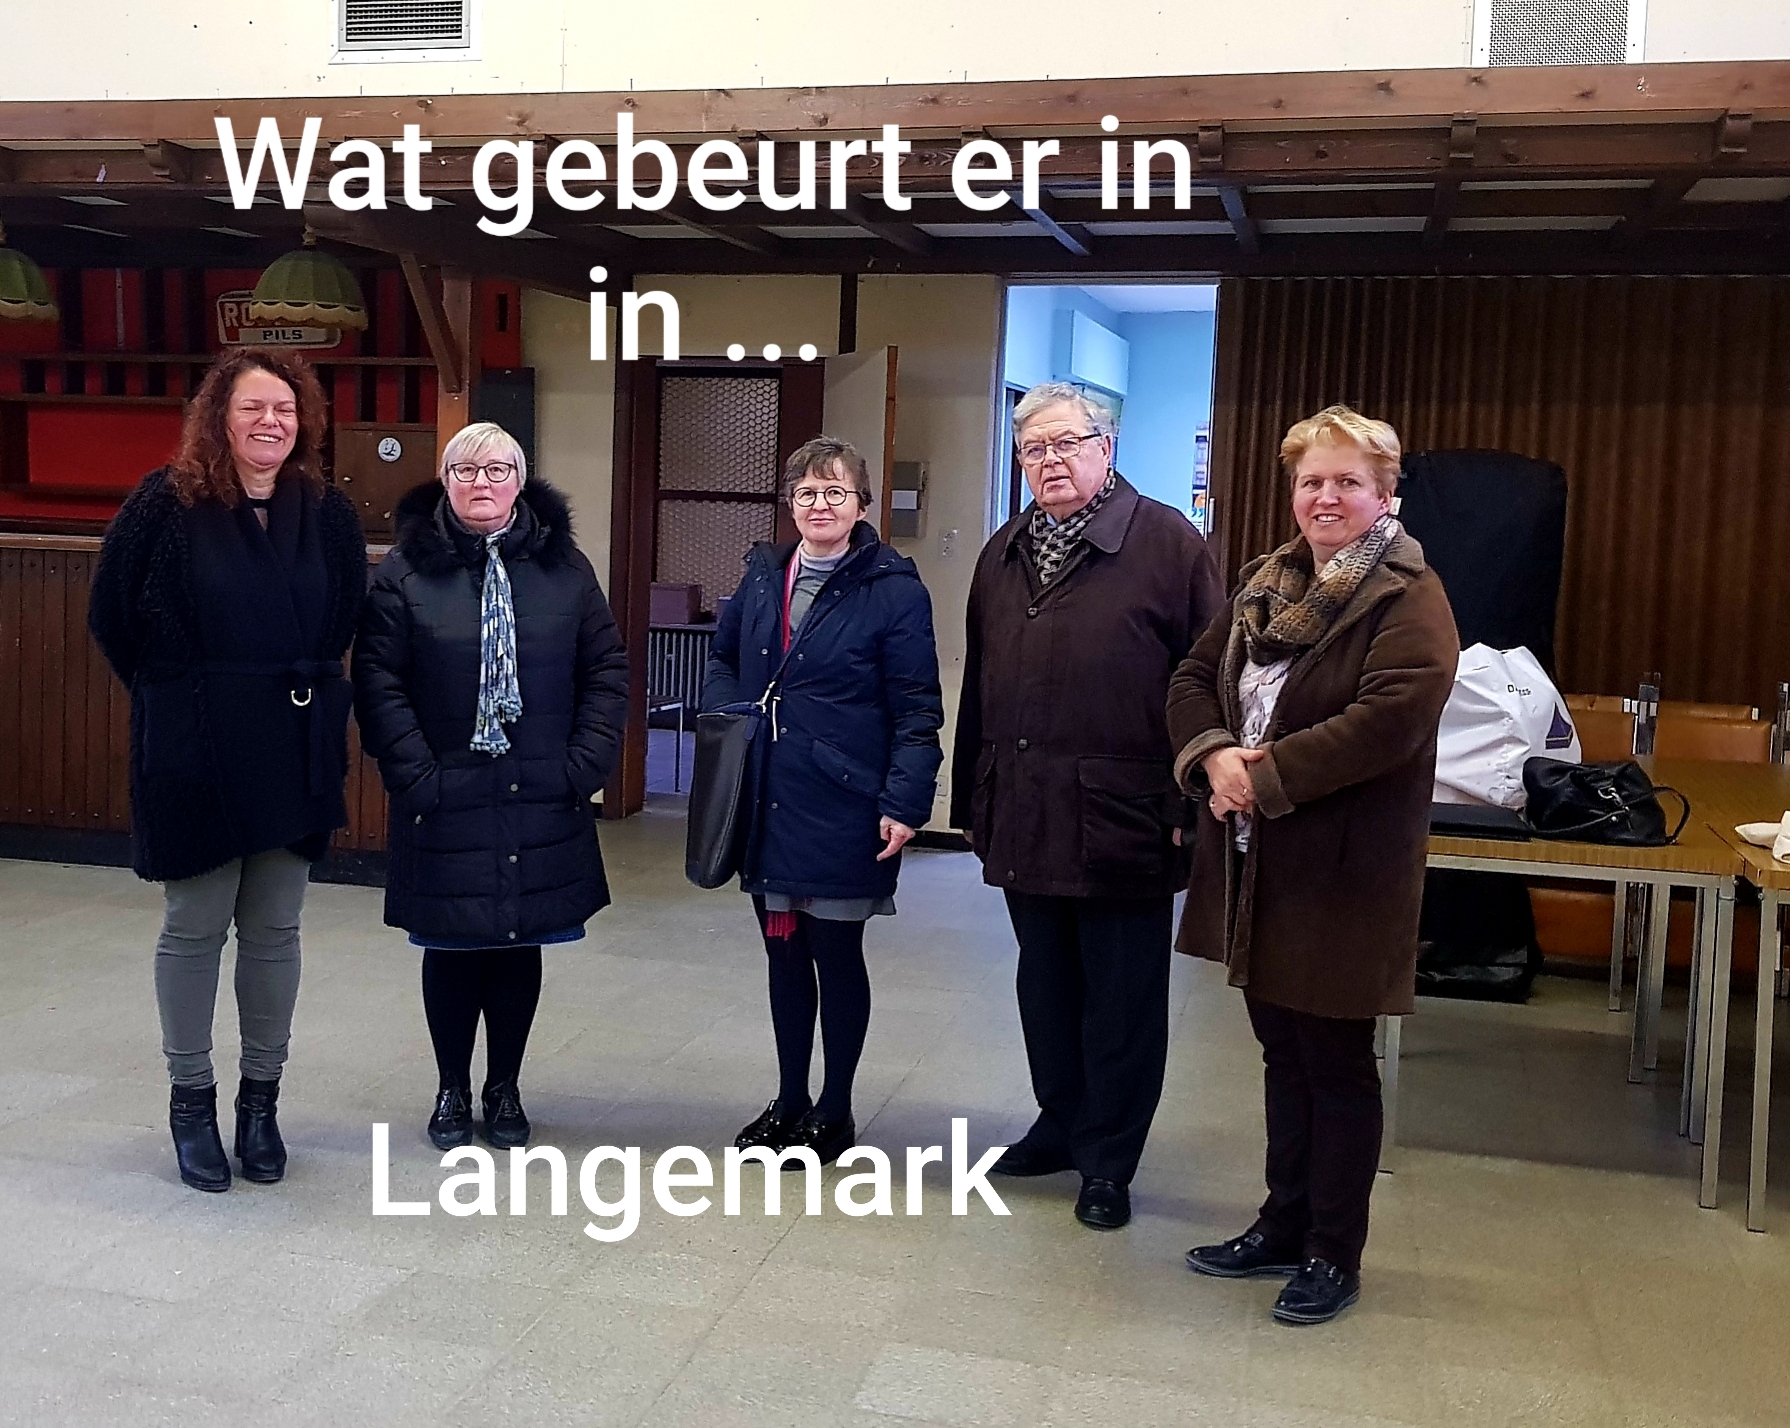 Wat gebeurt er in Langemark?